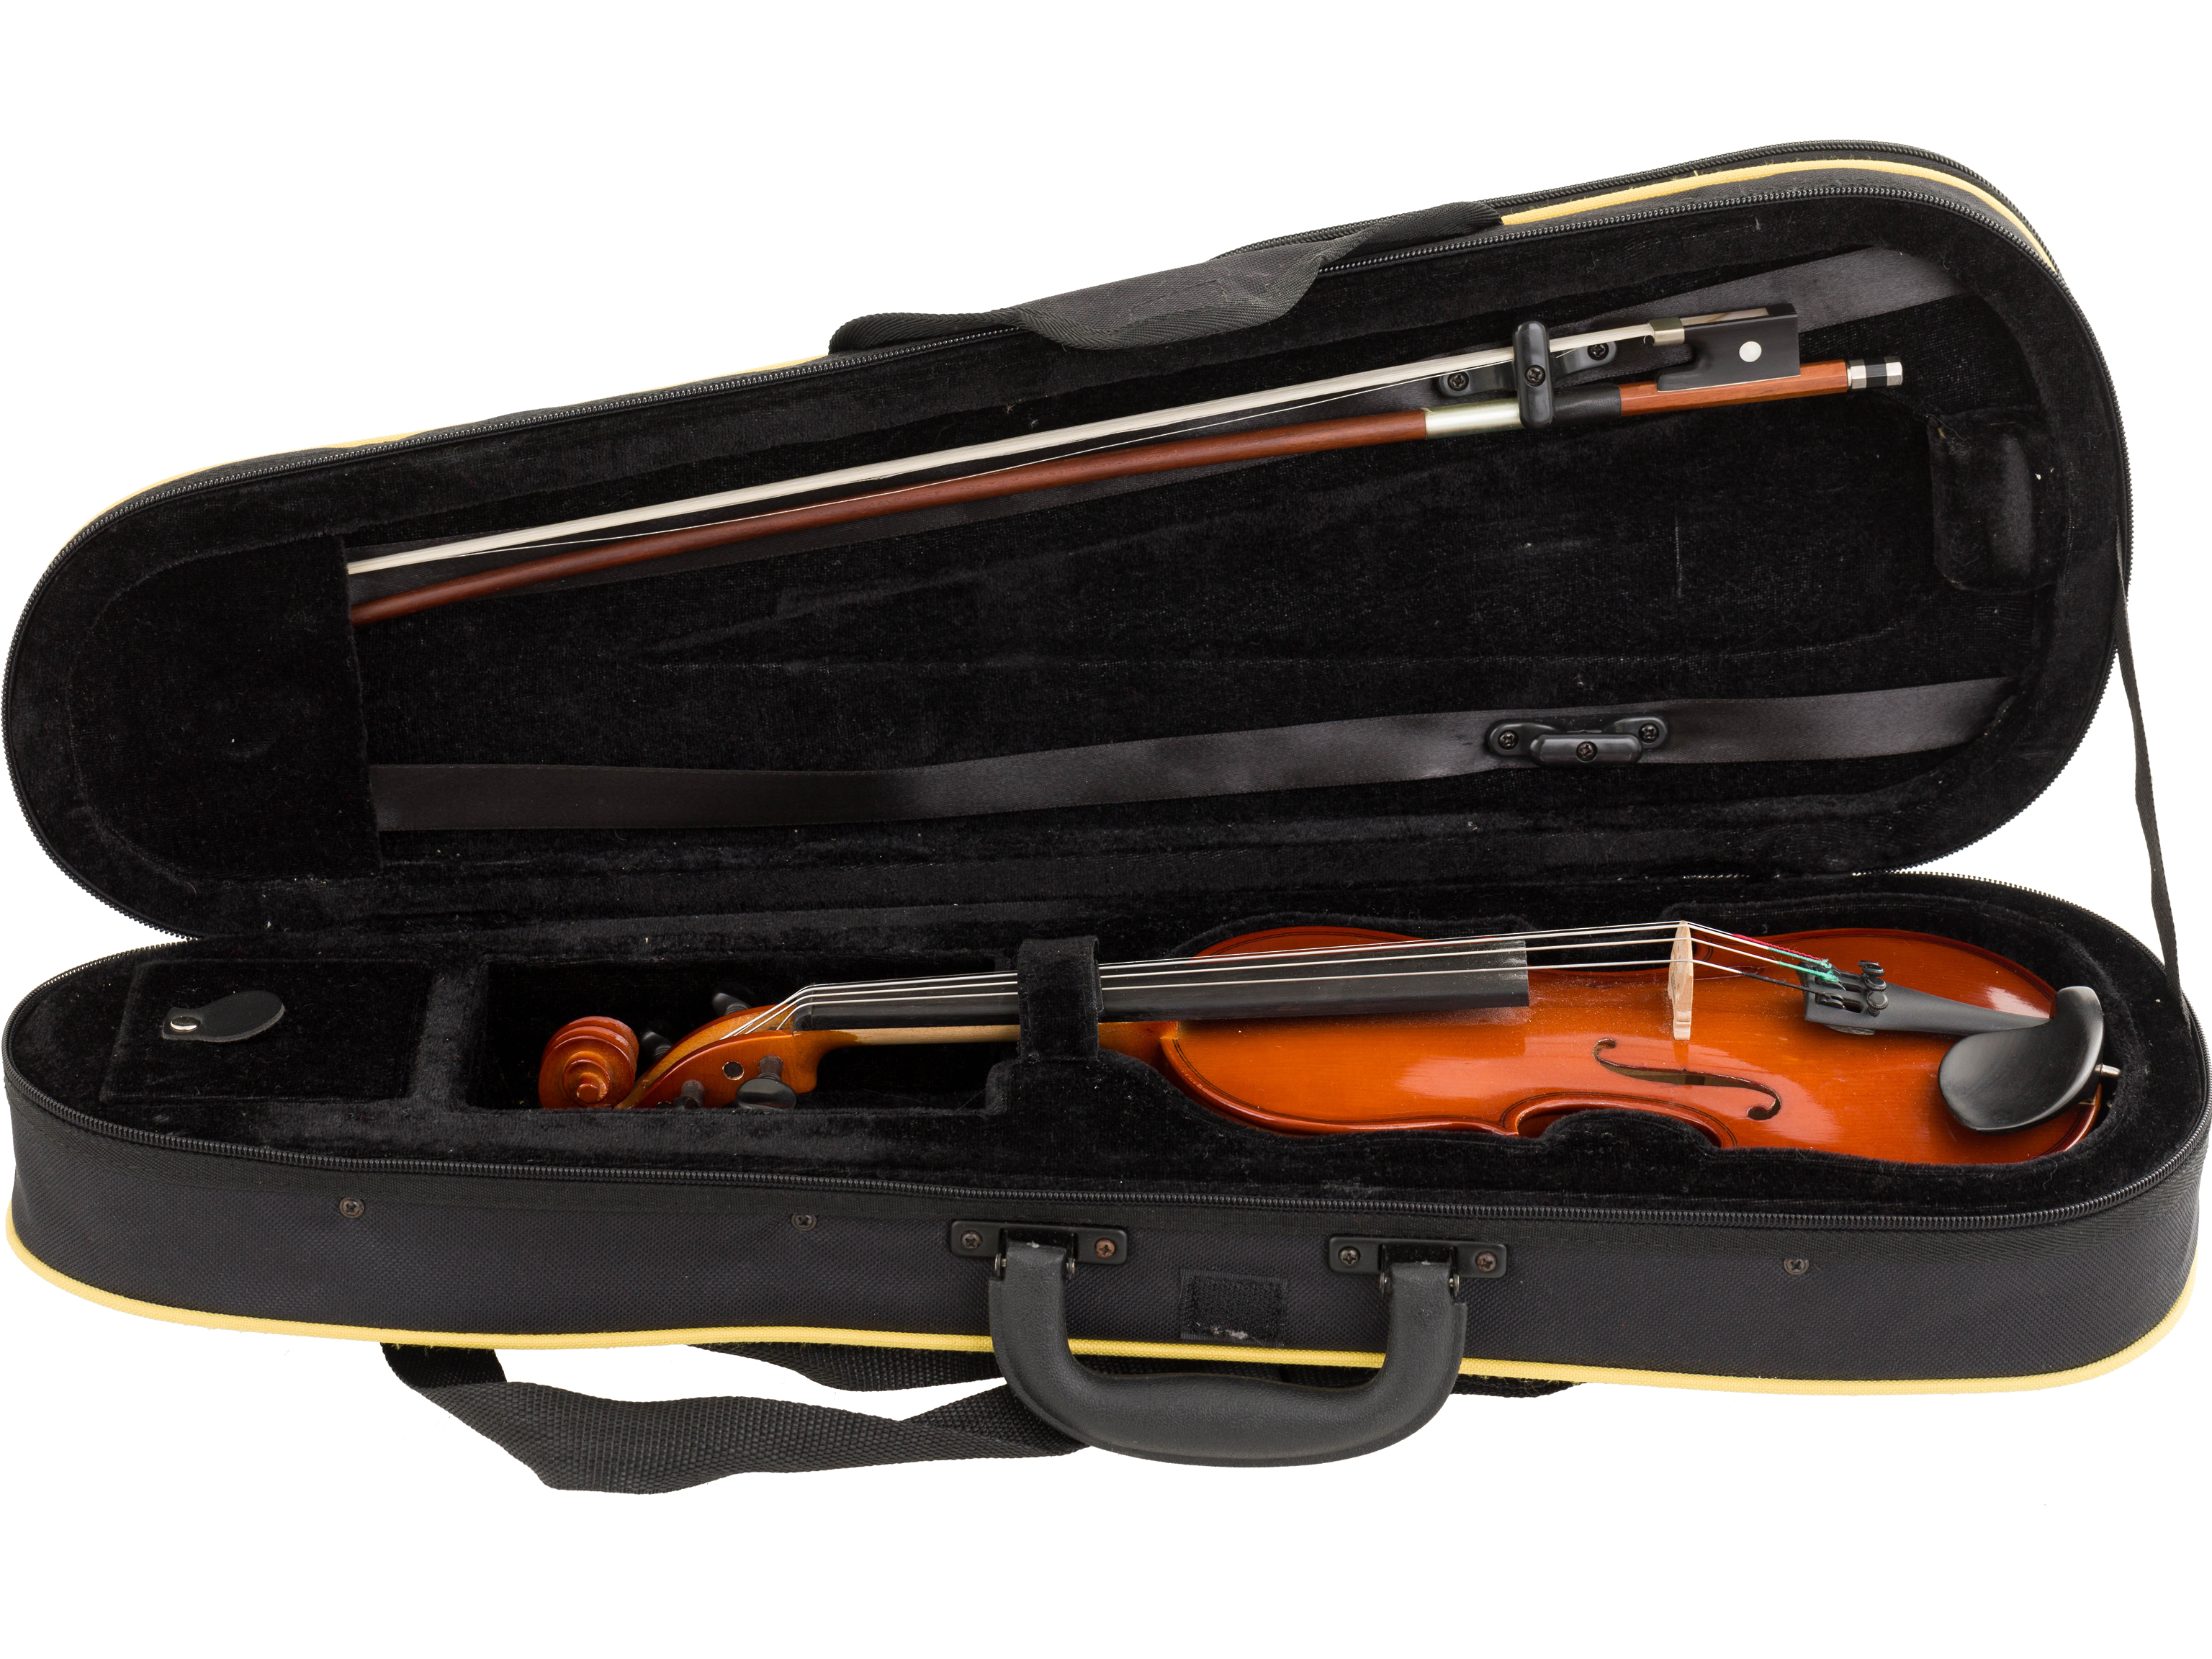 Gewa Allegro Violin-Set 1/8 gebr. 2 Jahre alt